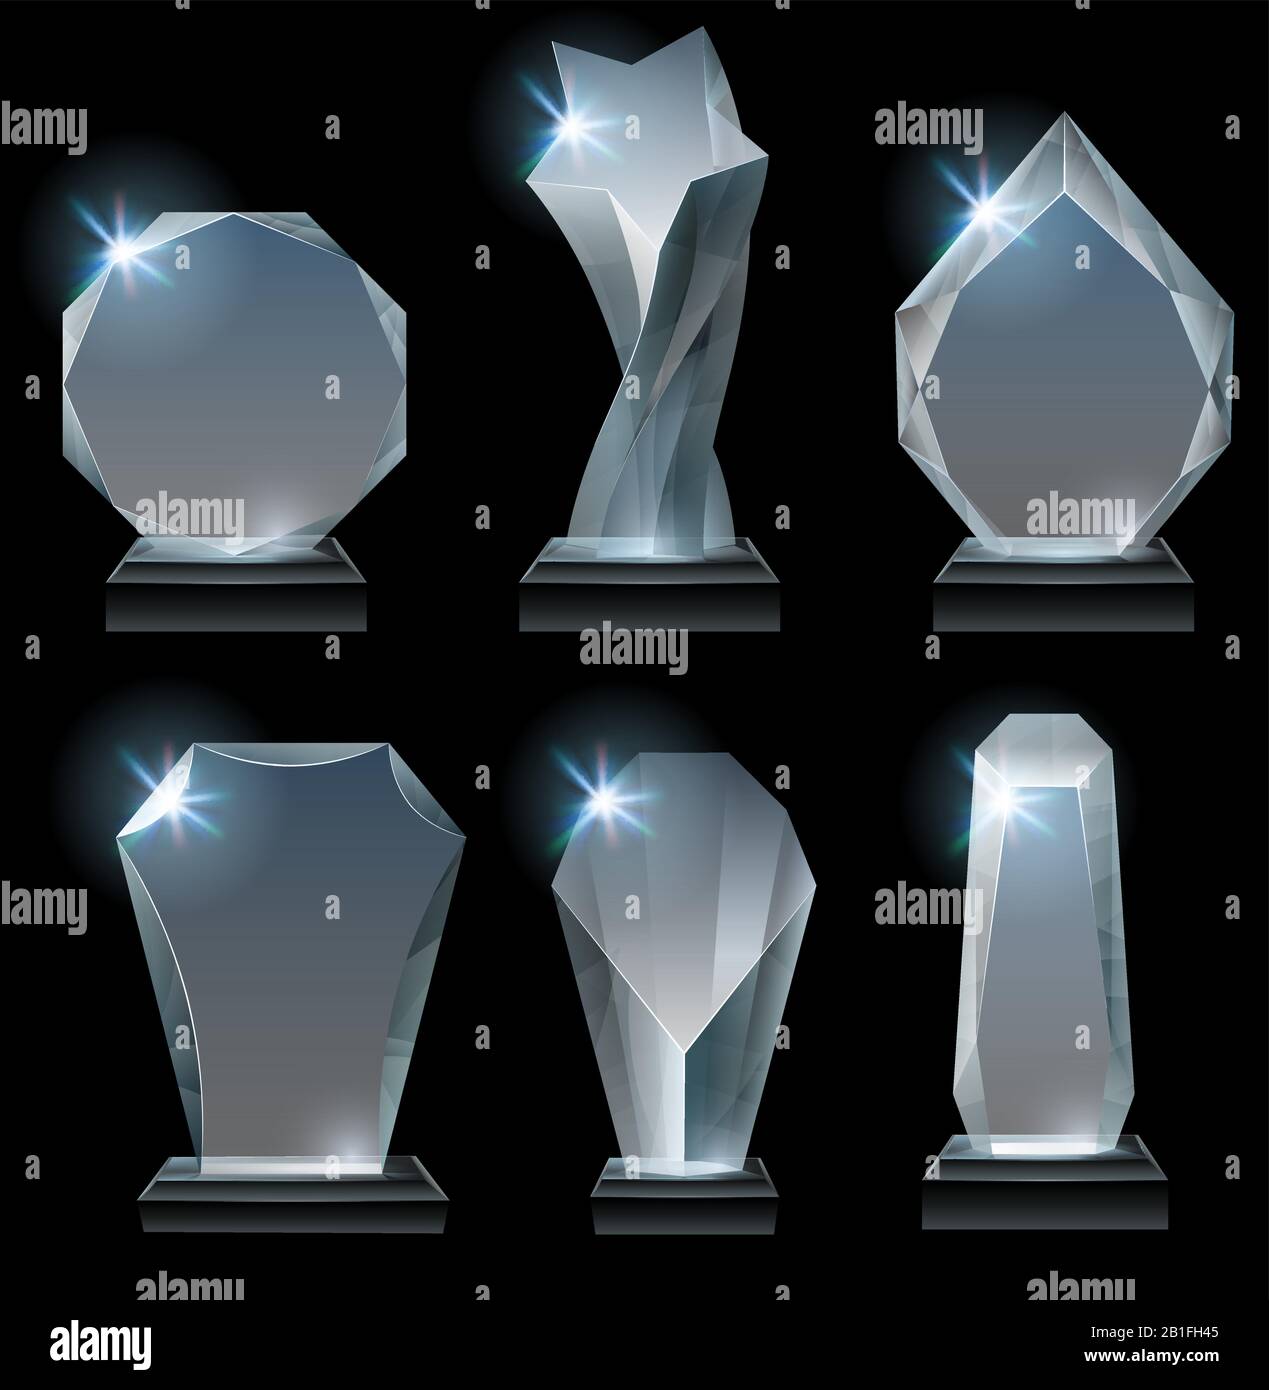 Transparente Trophäenauszeichnungen. Glass Award auf dem Stand, Acryl vergibt Trophäen und klaren Gewinner kristallrealistischer Vektorgrafik Stock Vektor